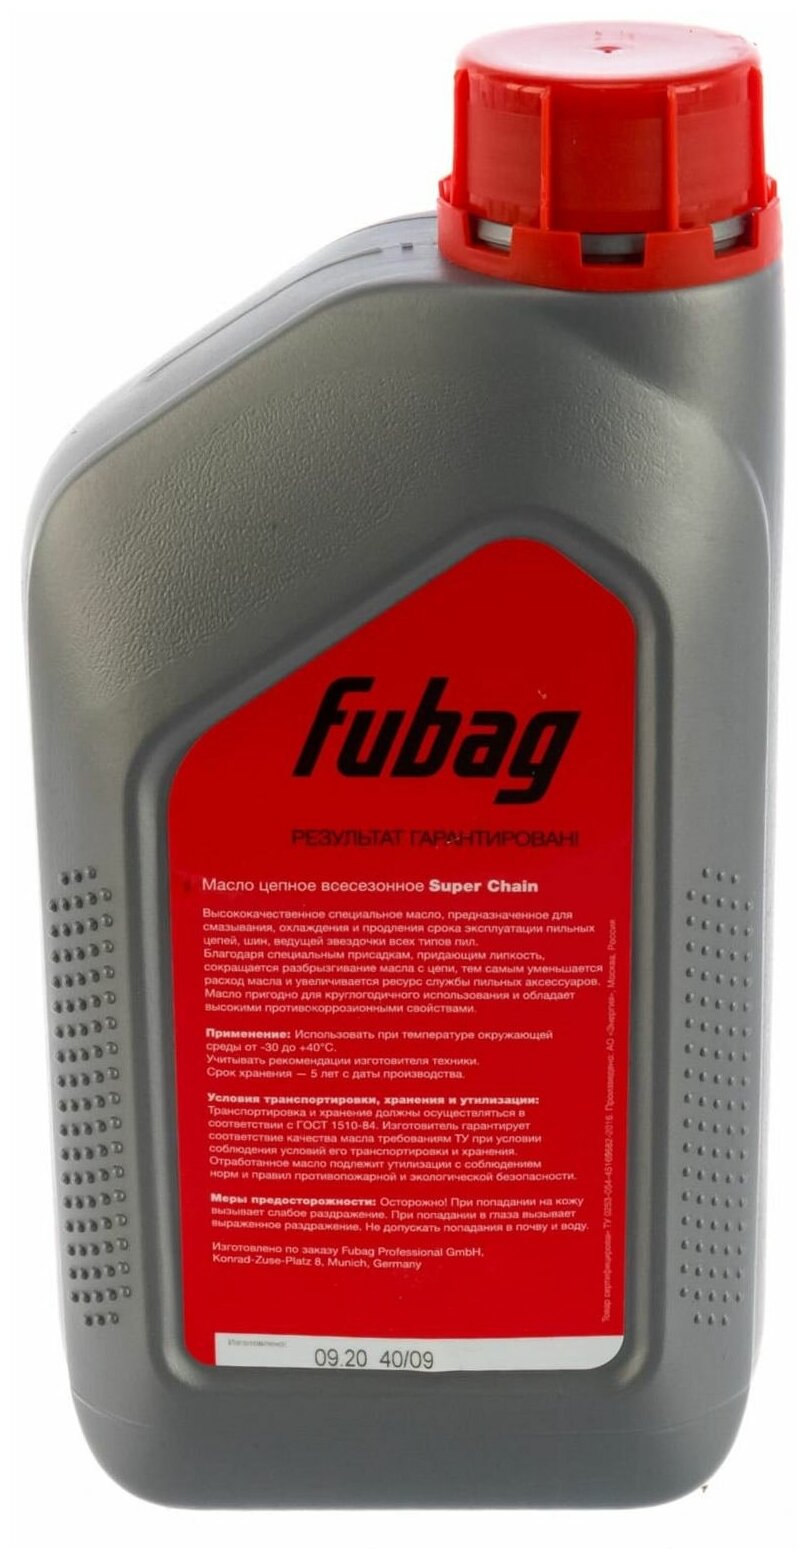 FUBAG Масло цепное всесезонное 1 литр Fubag Super Chain - фото №4